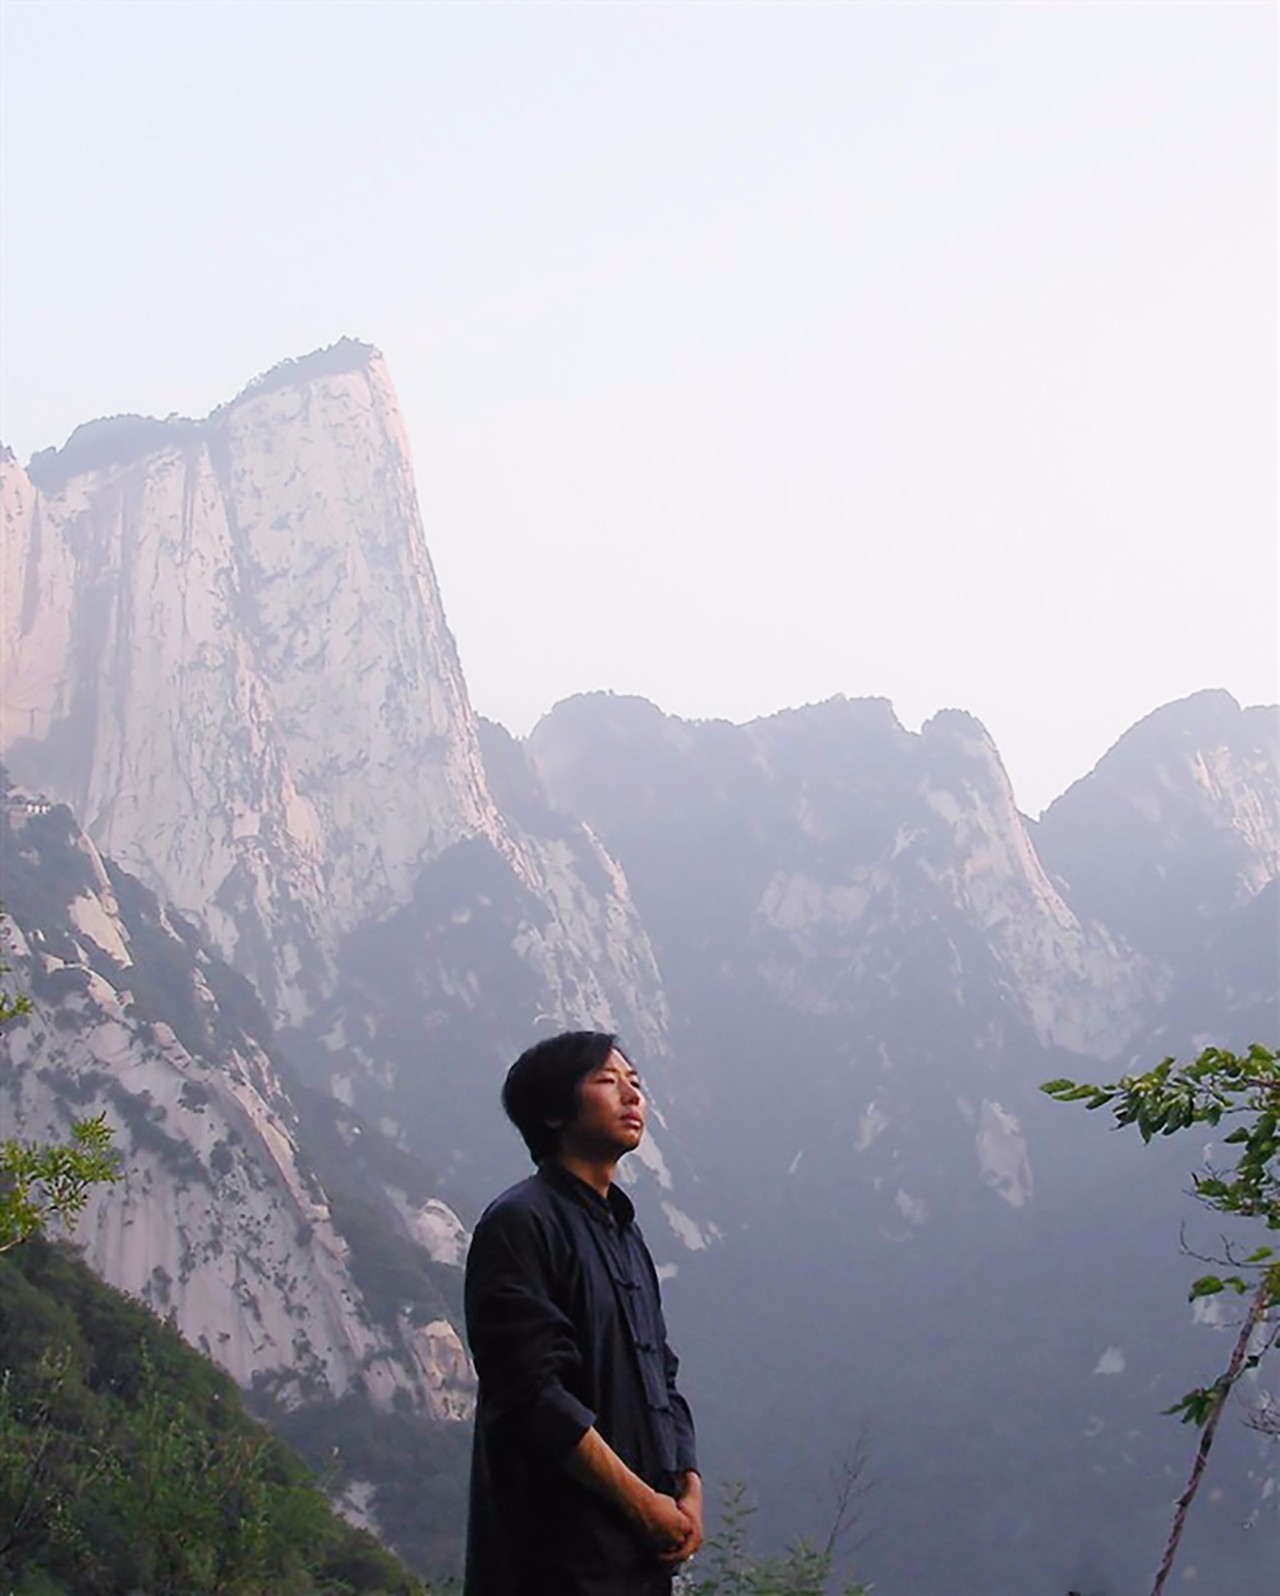 文化 正文 通过三年多的终南山寻访,张剑峰在山里发现了五六百名这样